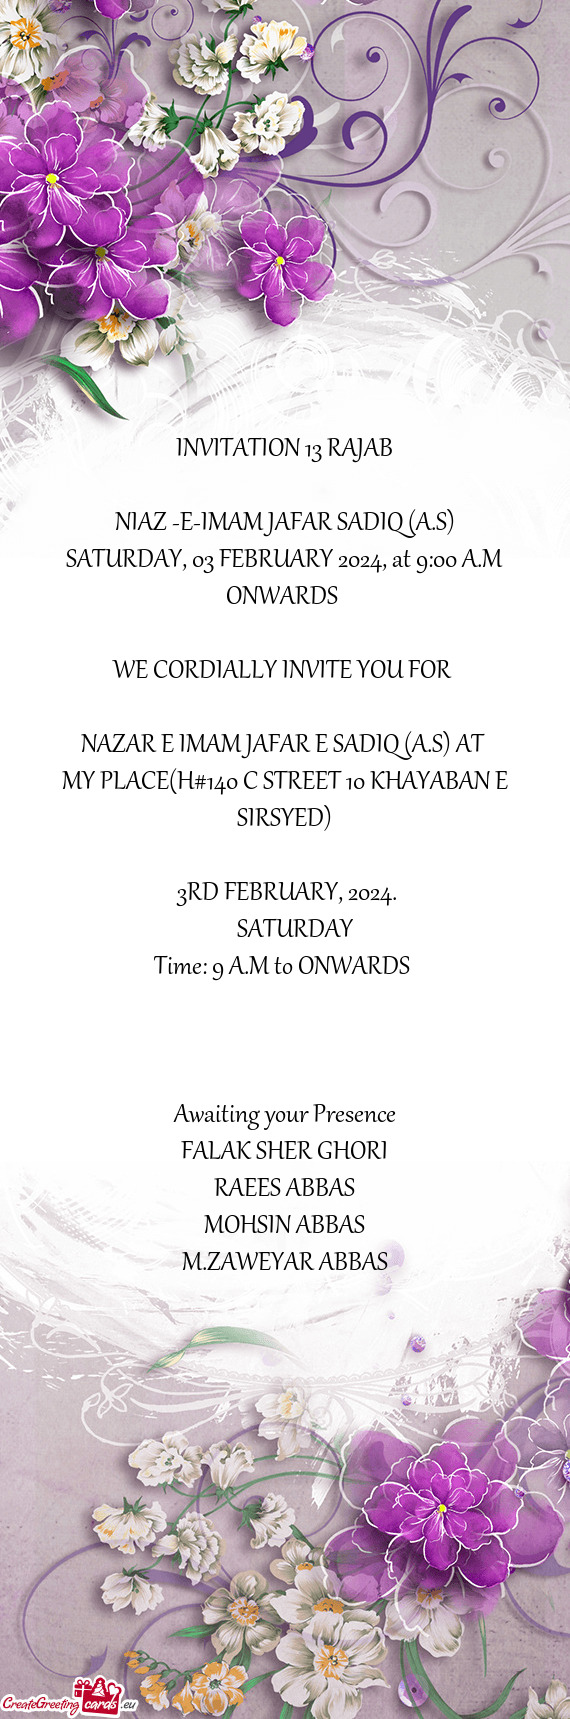 INVITATION 13 RAJAB